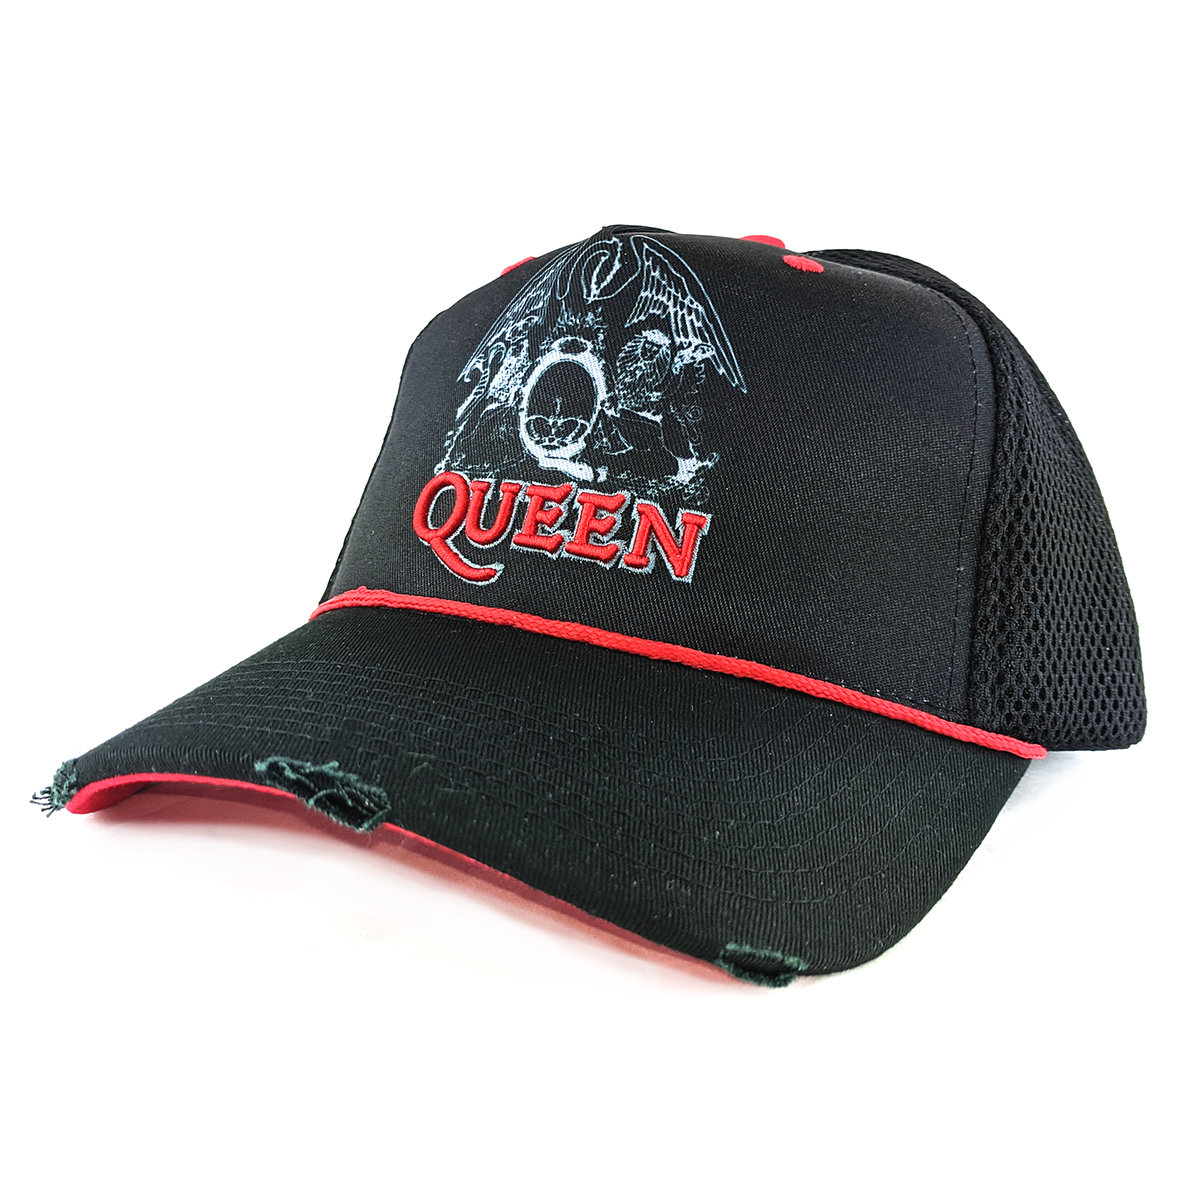 Queen - Line Art Crest Trucker Cap